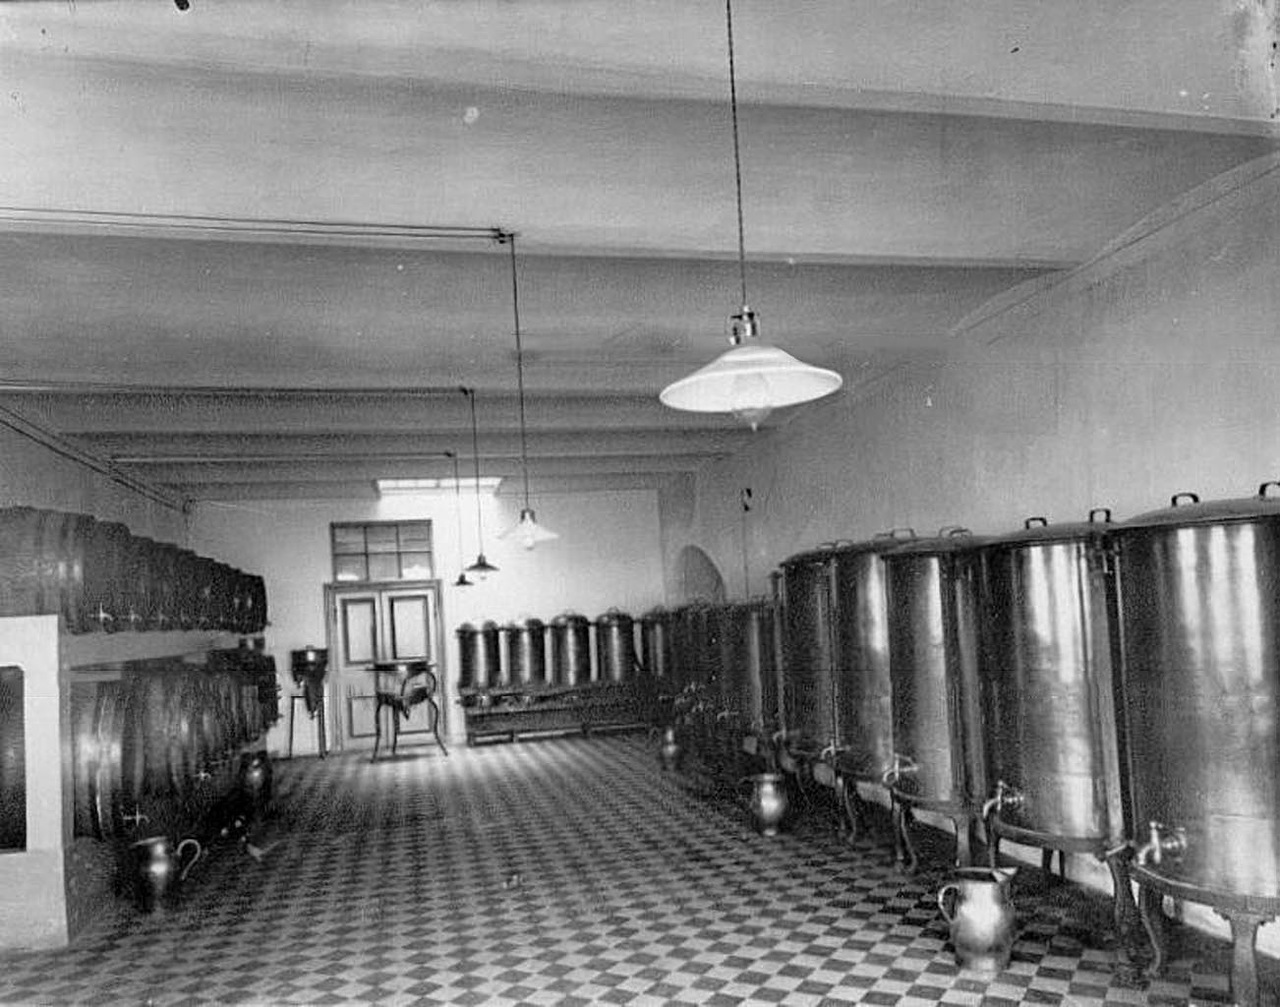 Auf der Weltausstellung von 1911 in Turin erhielt Keller und Co den Grand-Prix. Das sollte der letzte große Preis des Wodka-Brenners werden. Zu Beginn des Ersten Weltkrieges wurden in Russland Prohibitionsgesetze erlassen. / Weinkeller